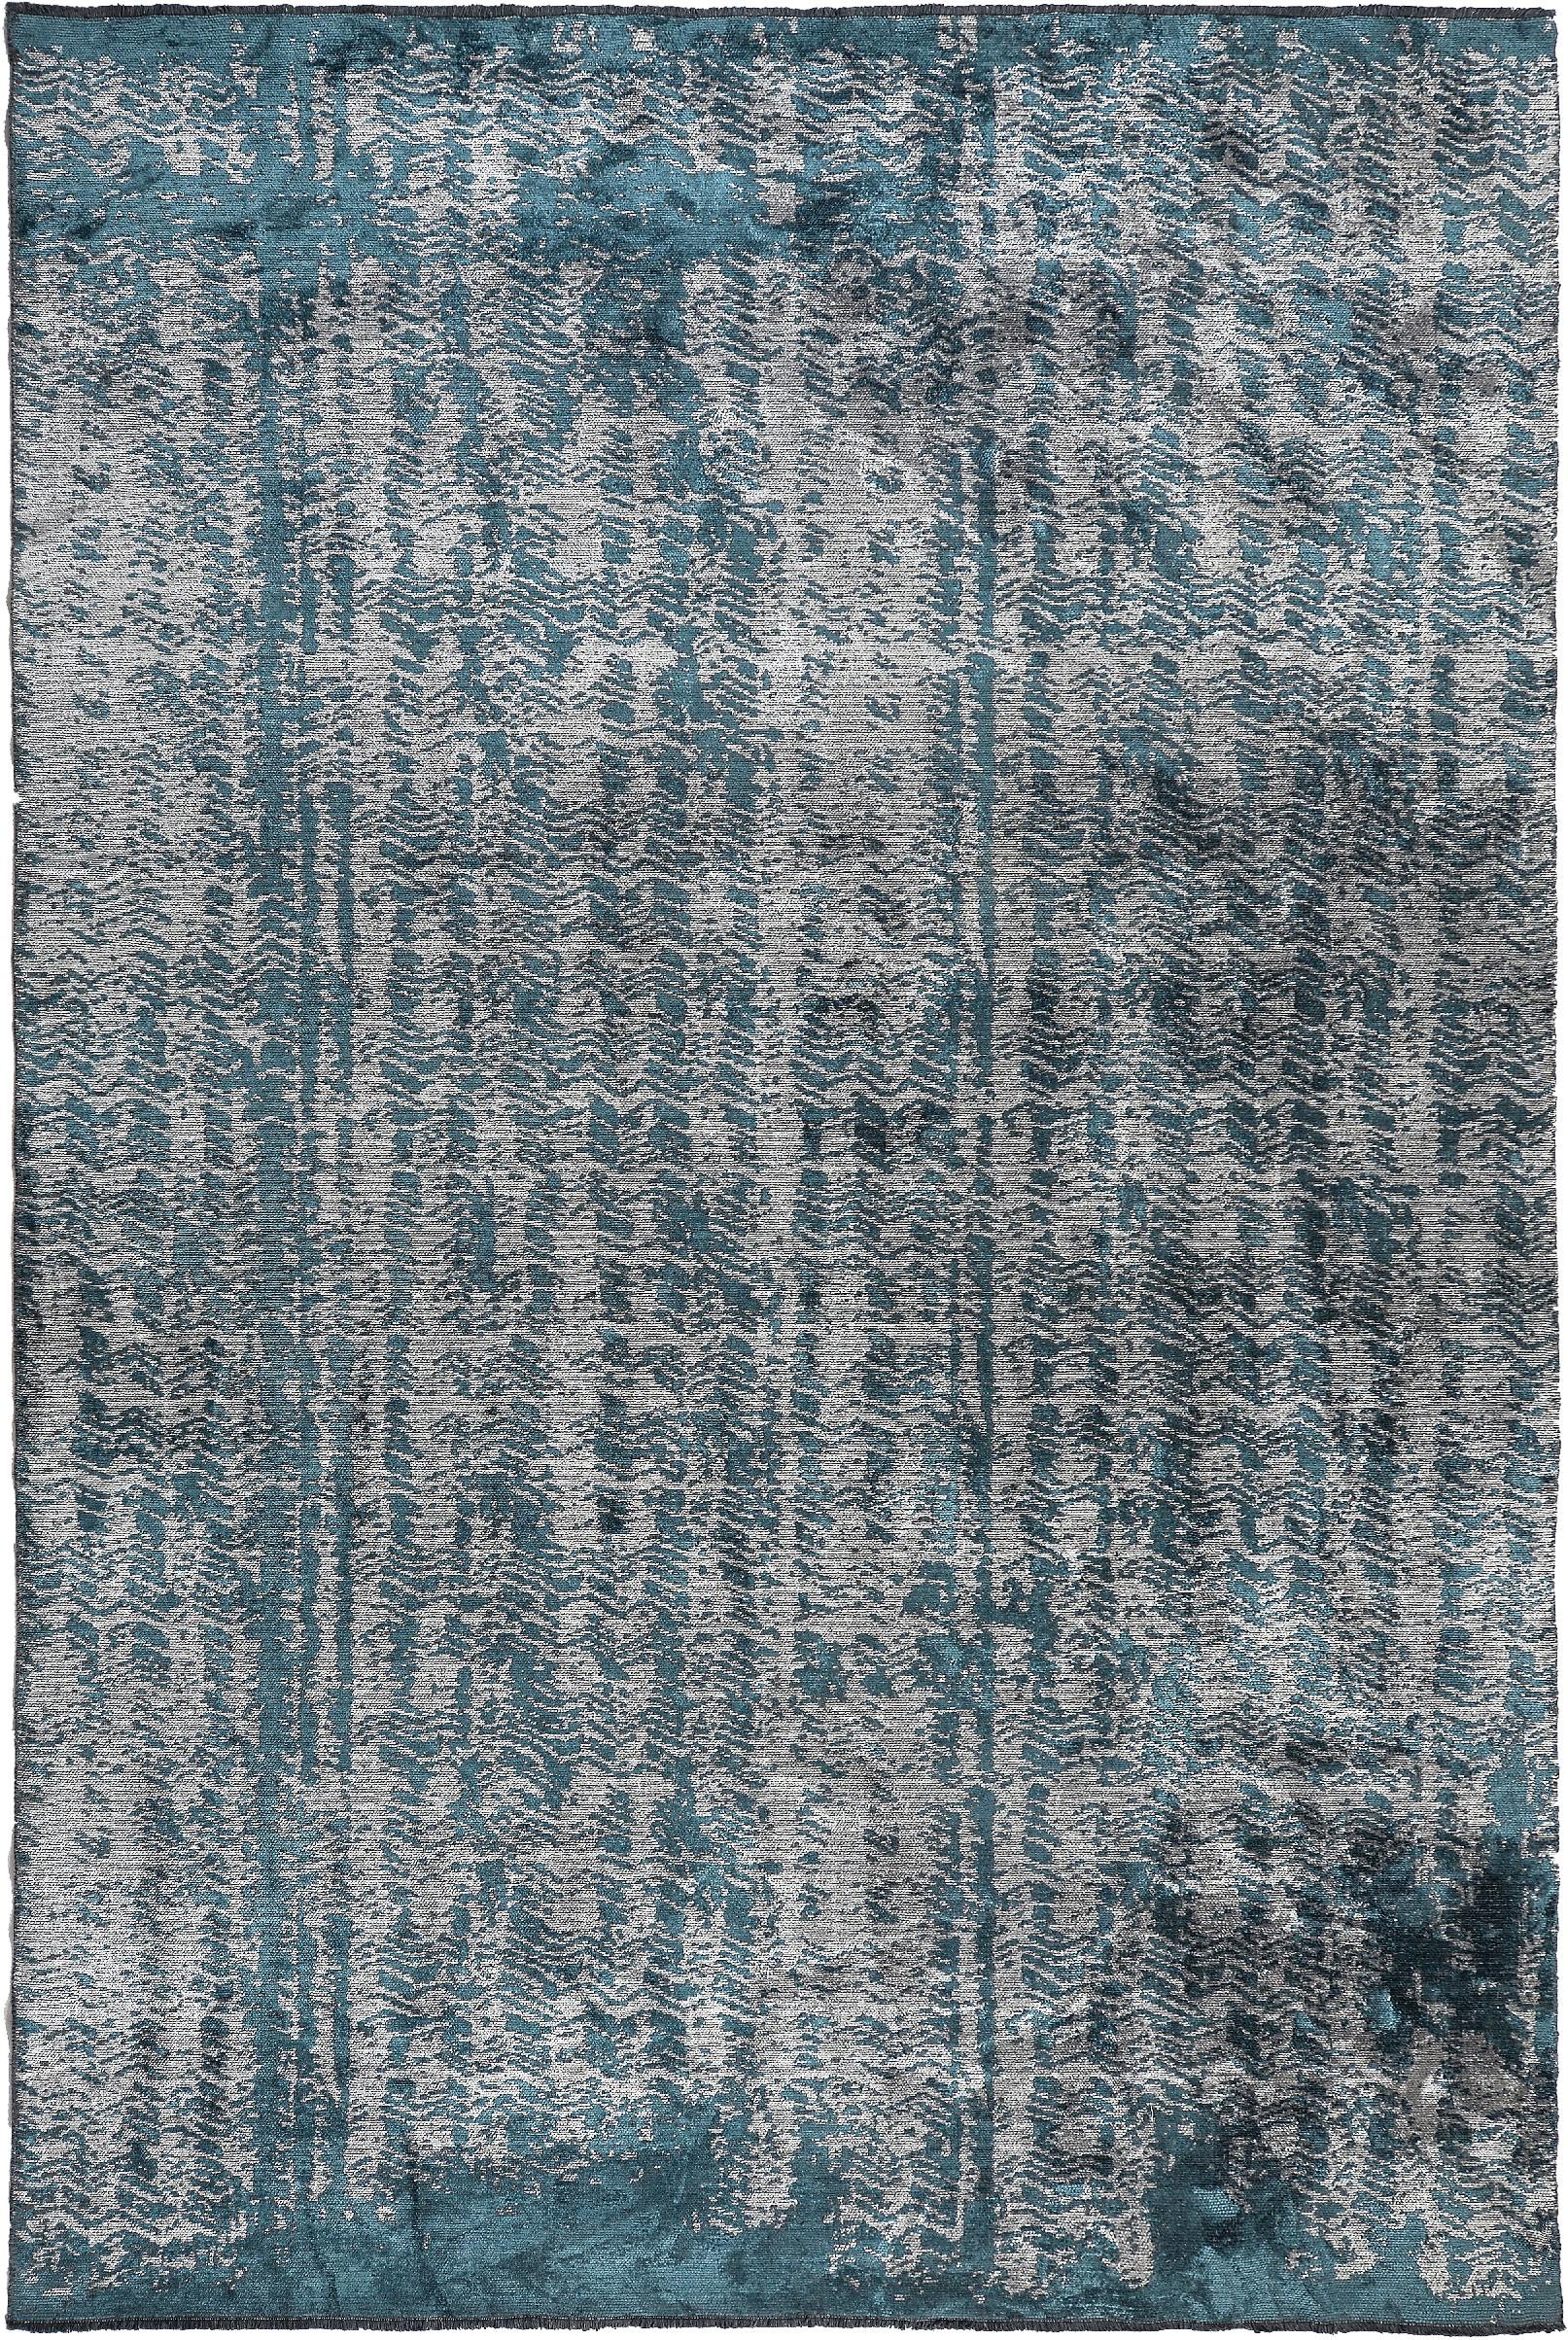 Im Angebot: Moderner abstrakter Luxus-Teppichboden,  (Grau)